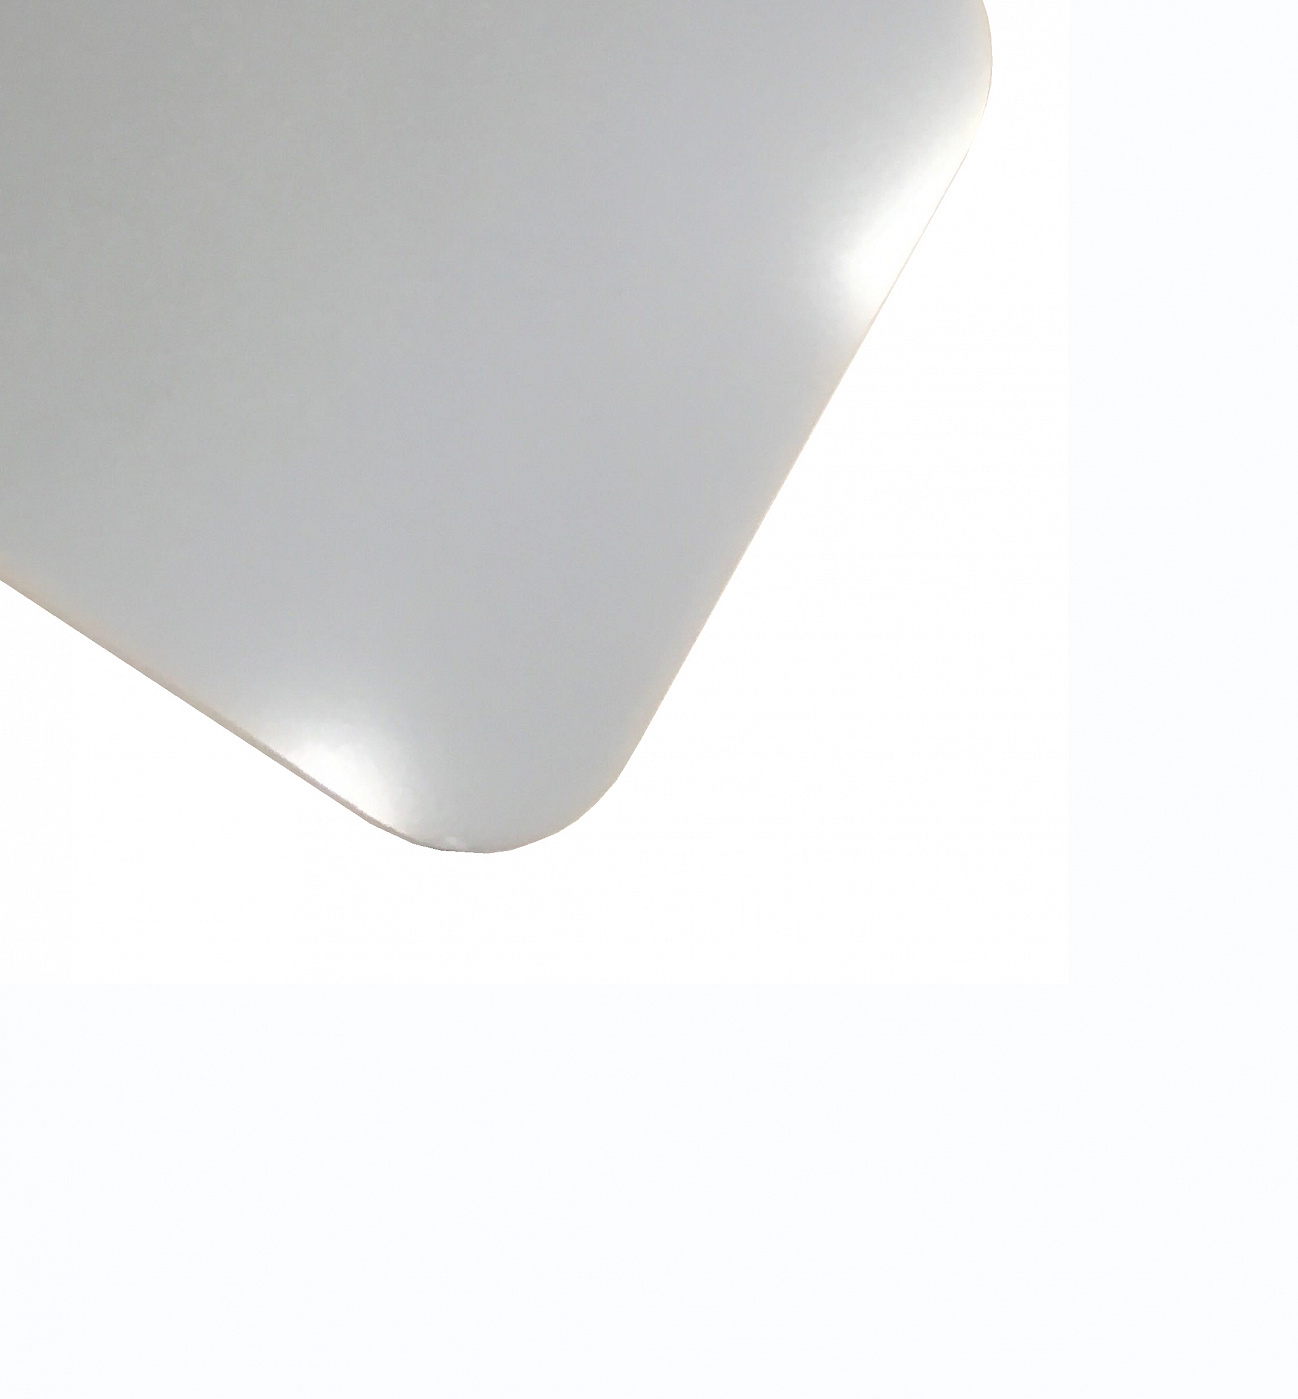 Планшет для пленэра из оргстекла 3 мм, под лист размера 21х30 см, цвет белый планшет минимед для предметных стекол на 20 мест